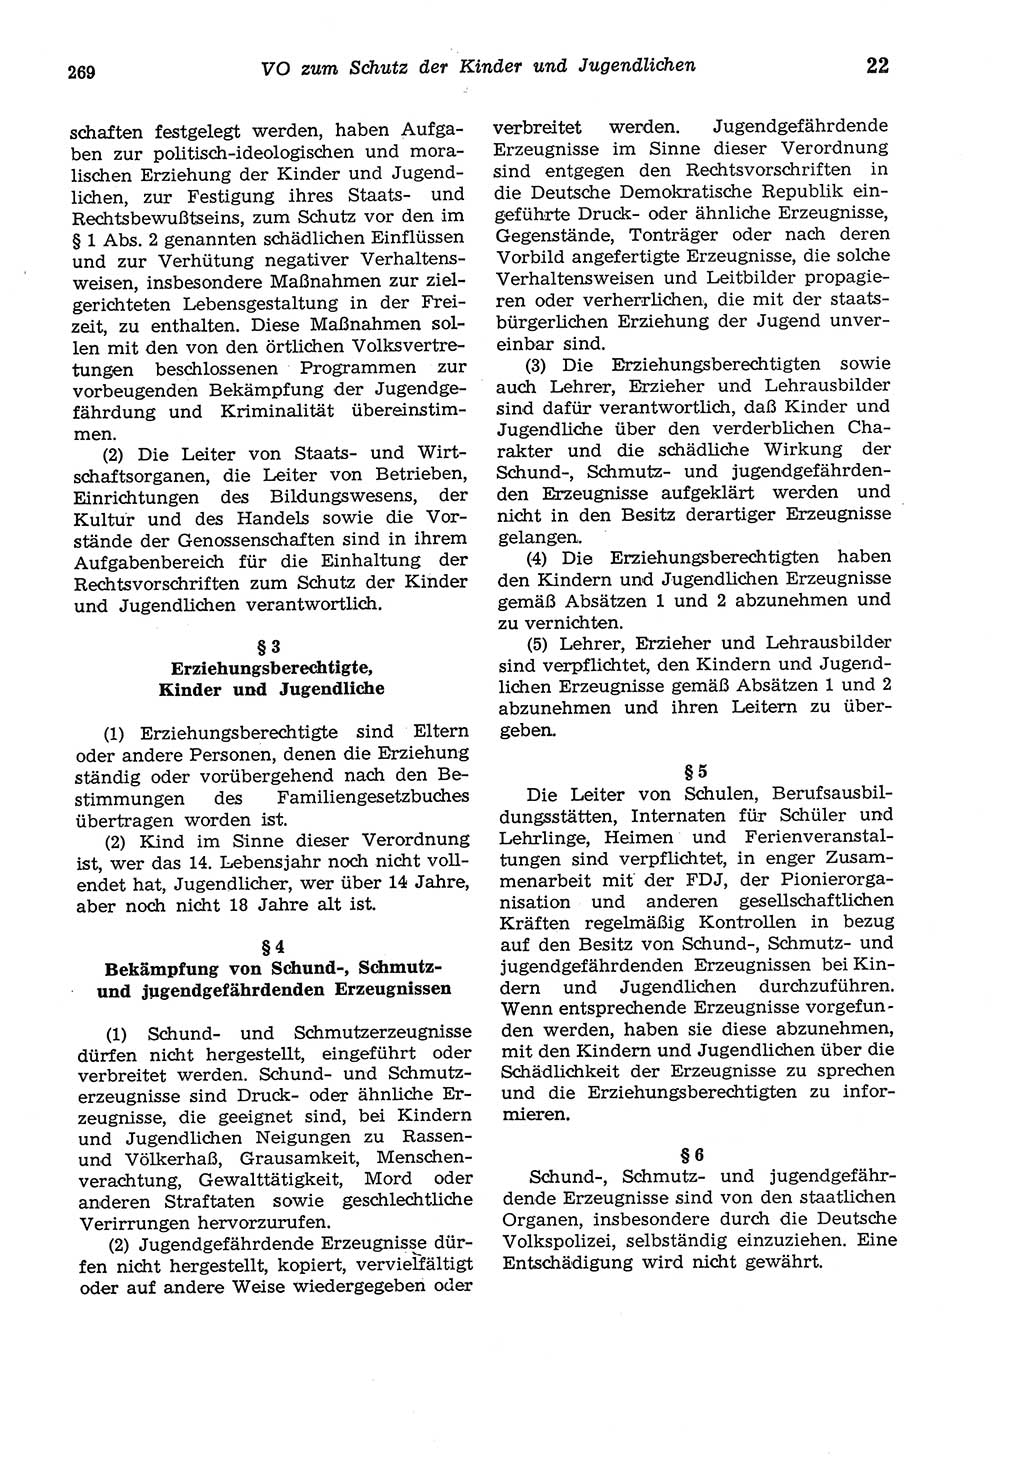 Strafgesetzbuch (StGB) der Deutschen Demokratischen Republik (DDR) und angrenzende Gesetze und Bestimmungen 1975, Seite 269 (StGB DDR Ges. Best. 1975, S. 269)